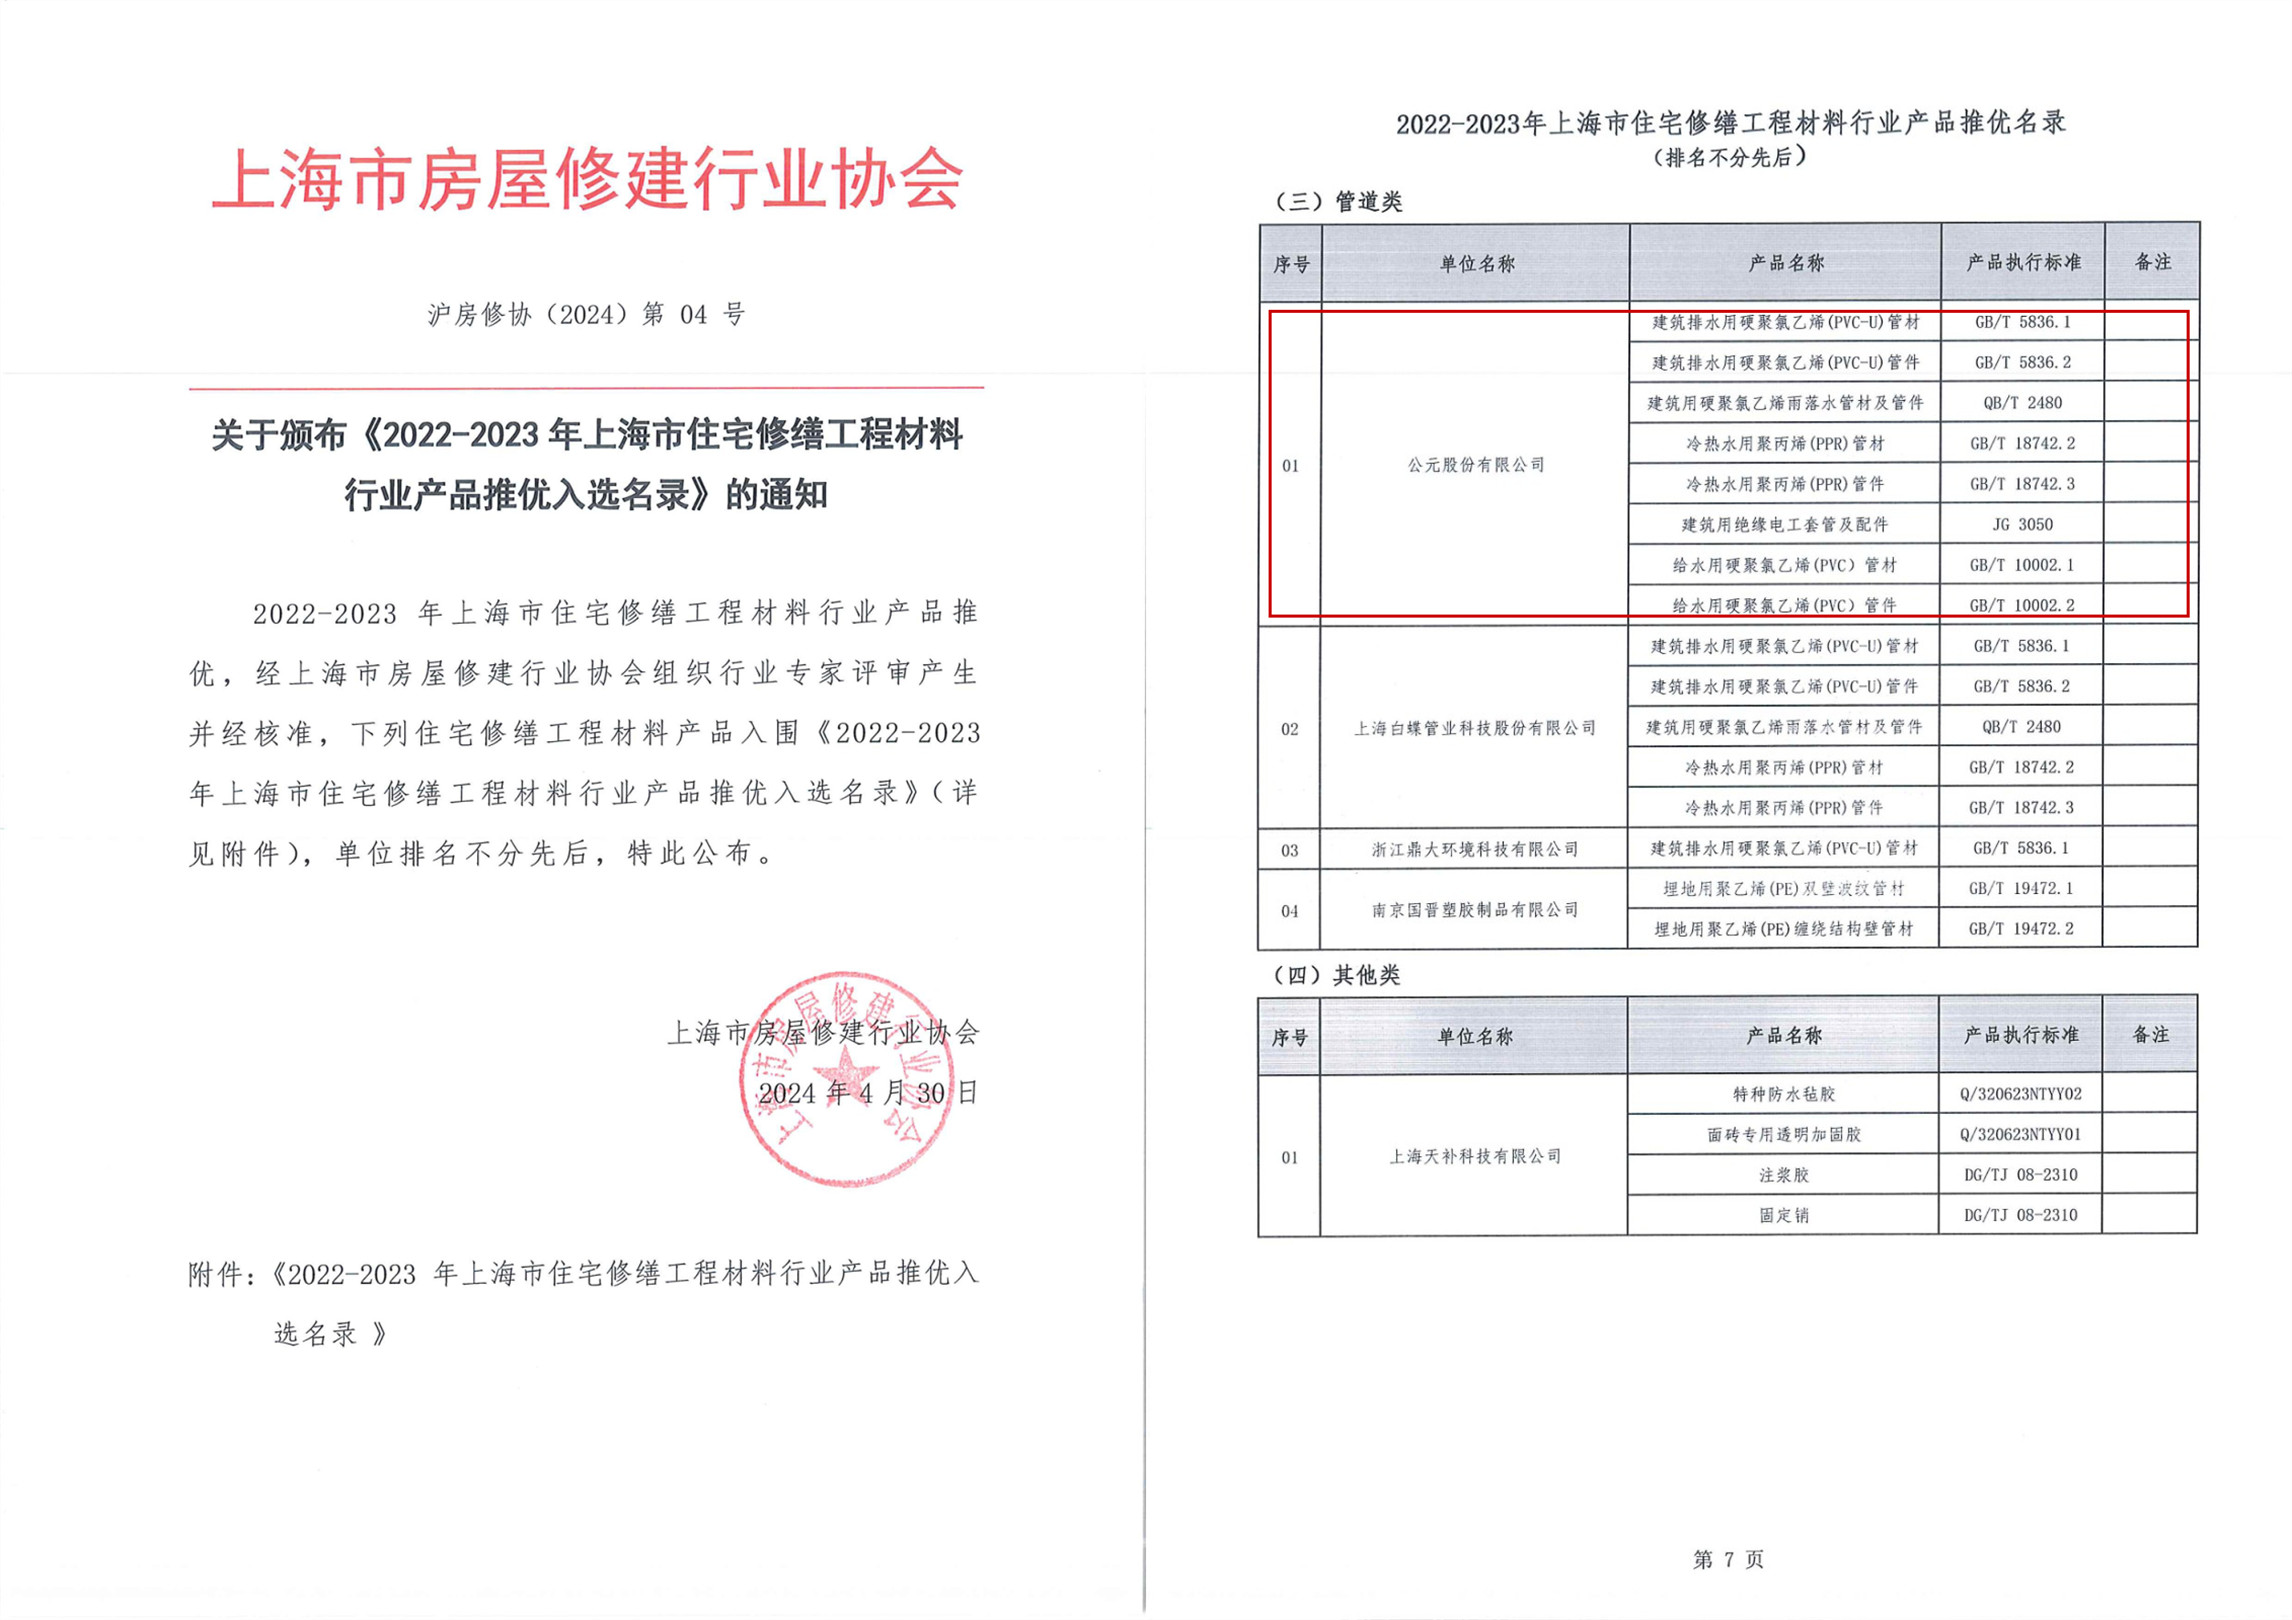 Couronné d'honneur |ERA PIPING a été sélectionné dans la « Liste des produits recommandés pour l'industrie des matériaux d'ingénierie pour la rénovation résidentielle de Shanghai en 2022-2023 »